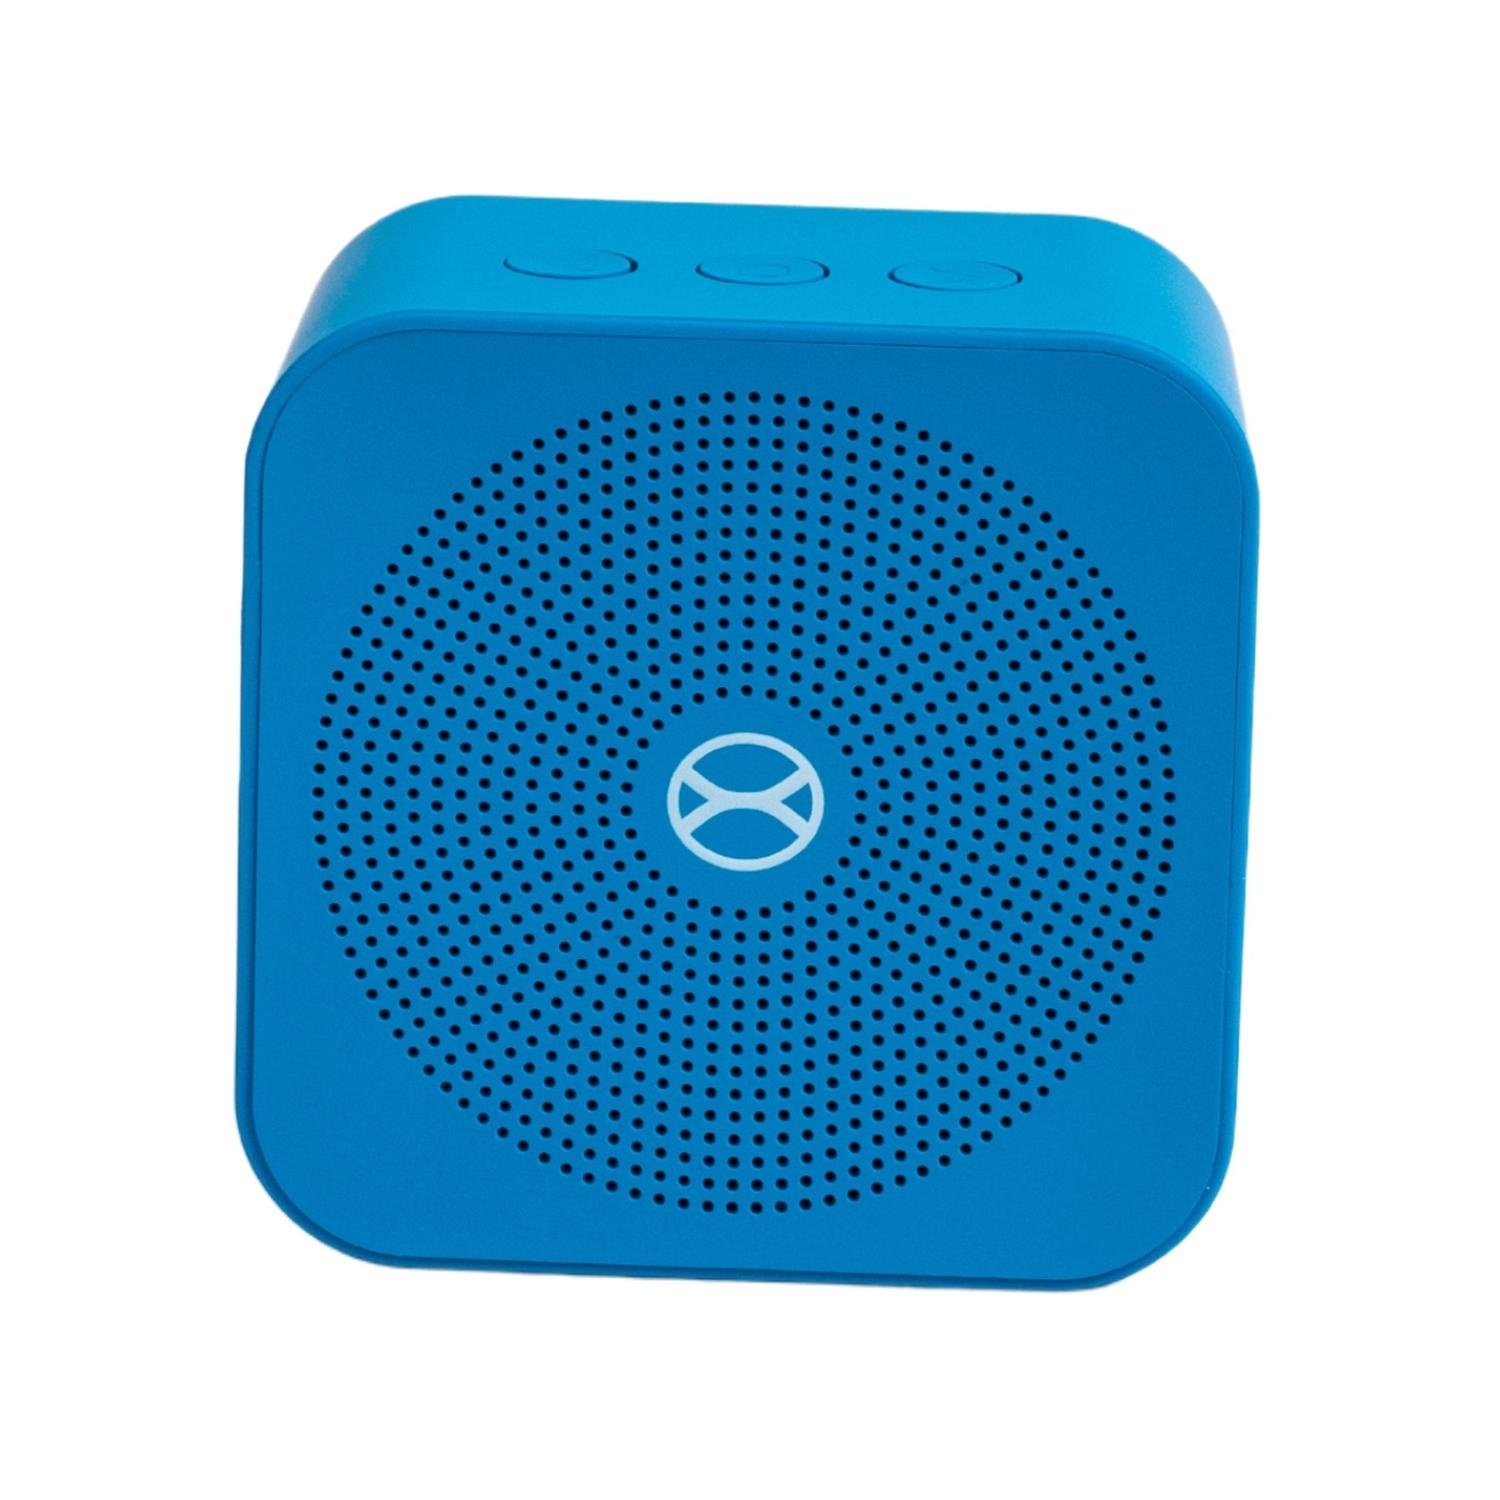 Caixa De Som Xtrax Pocket Azul bluetooth 5.0 permite chamadas